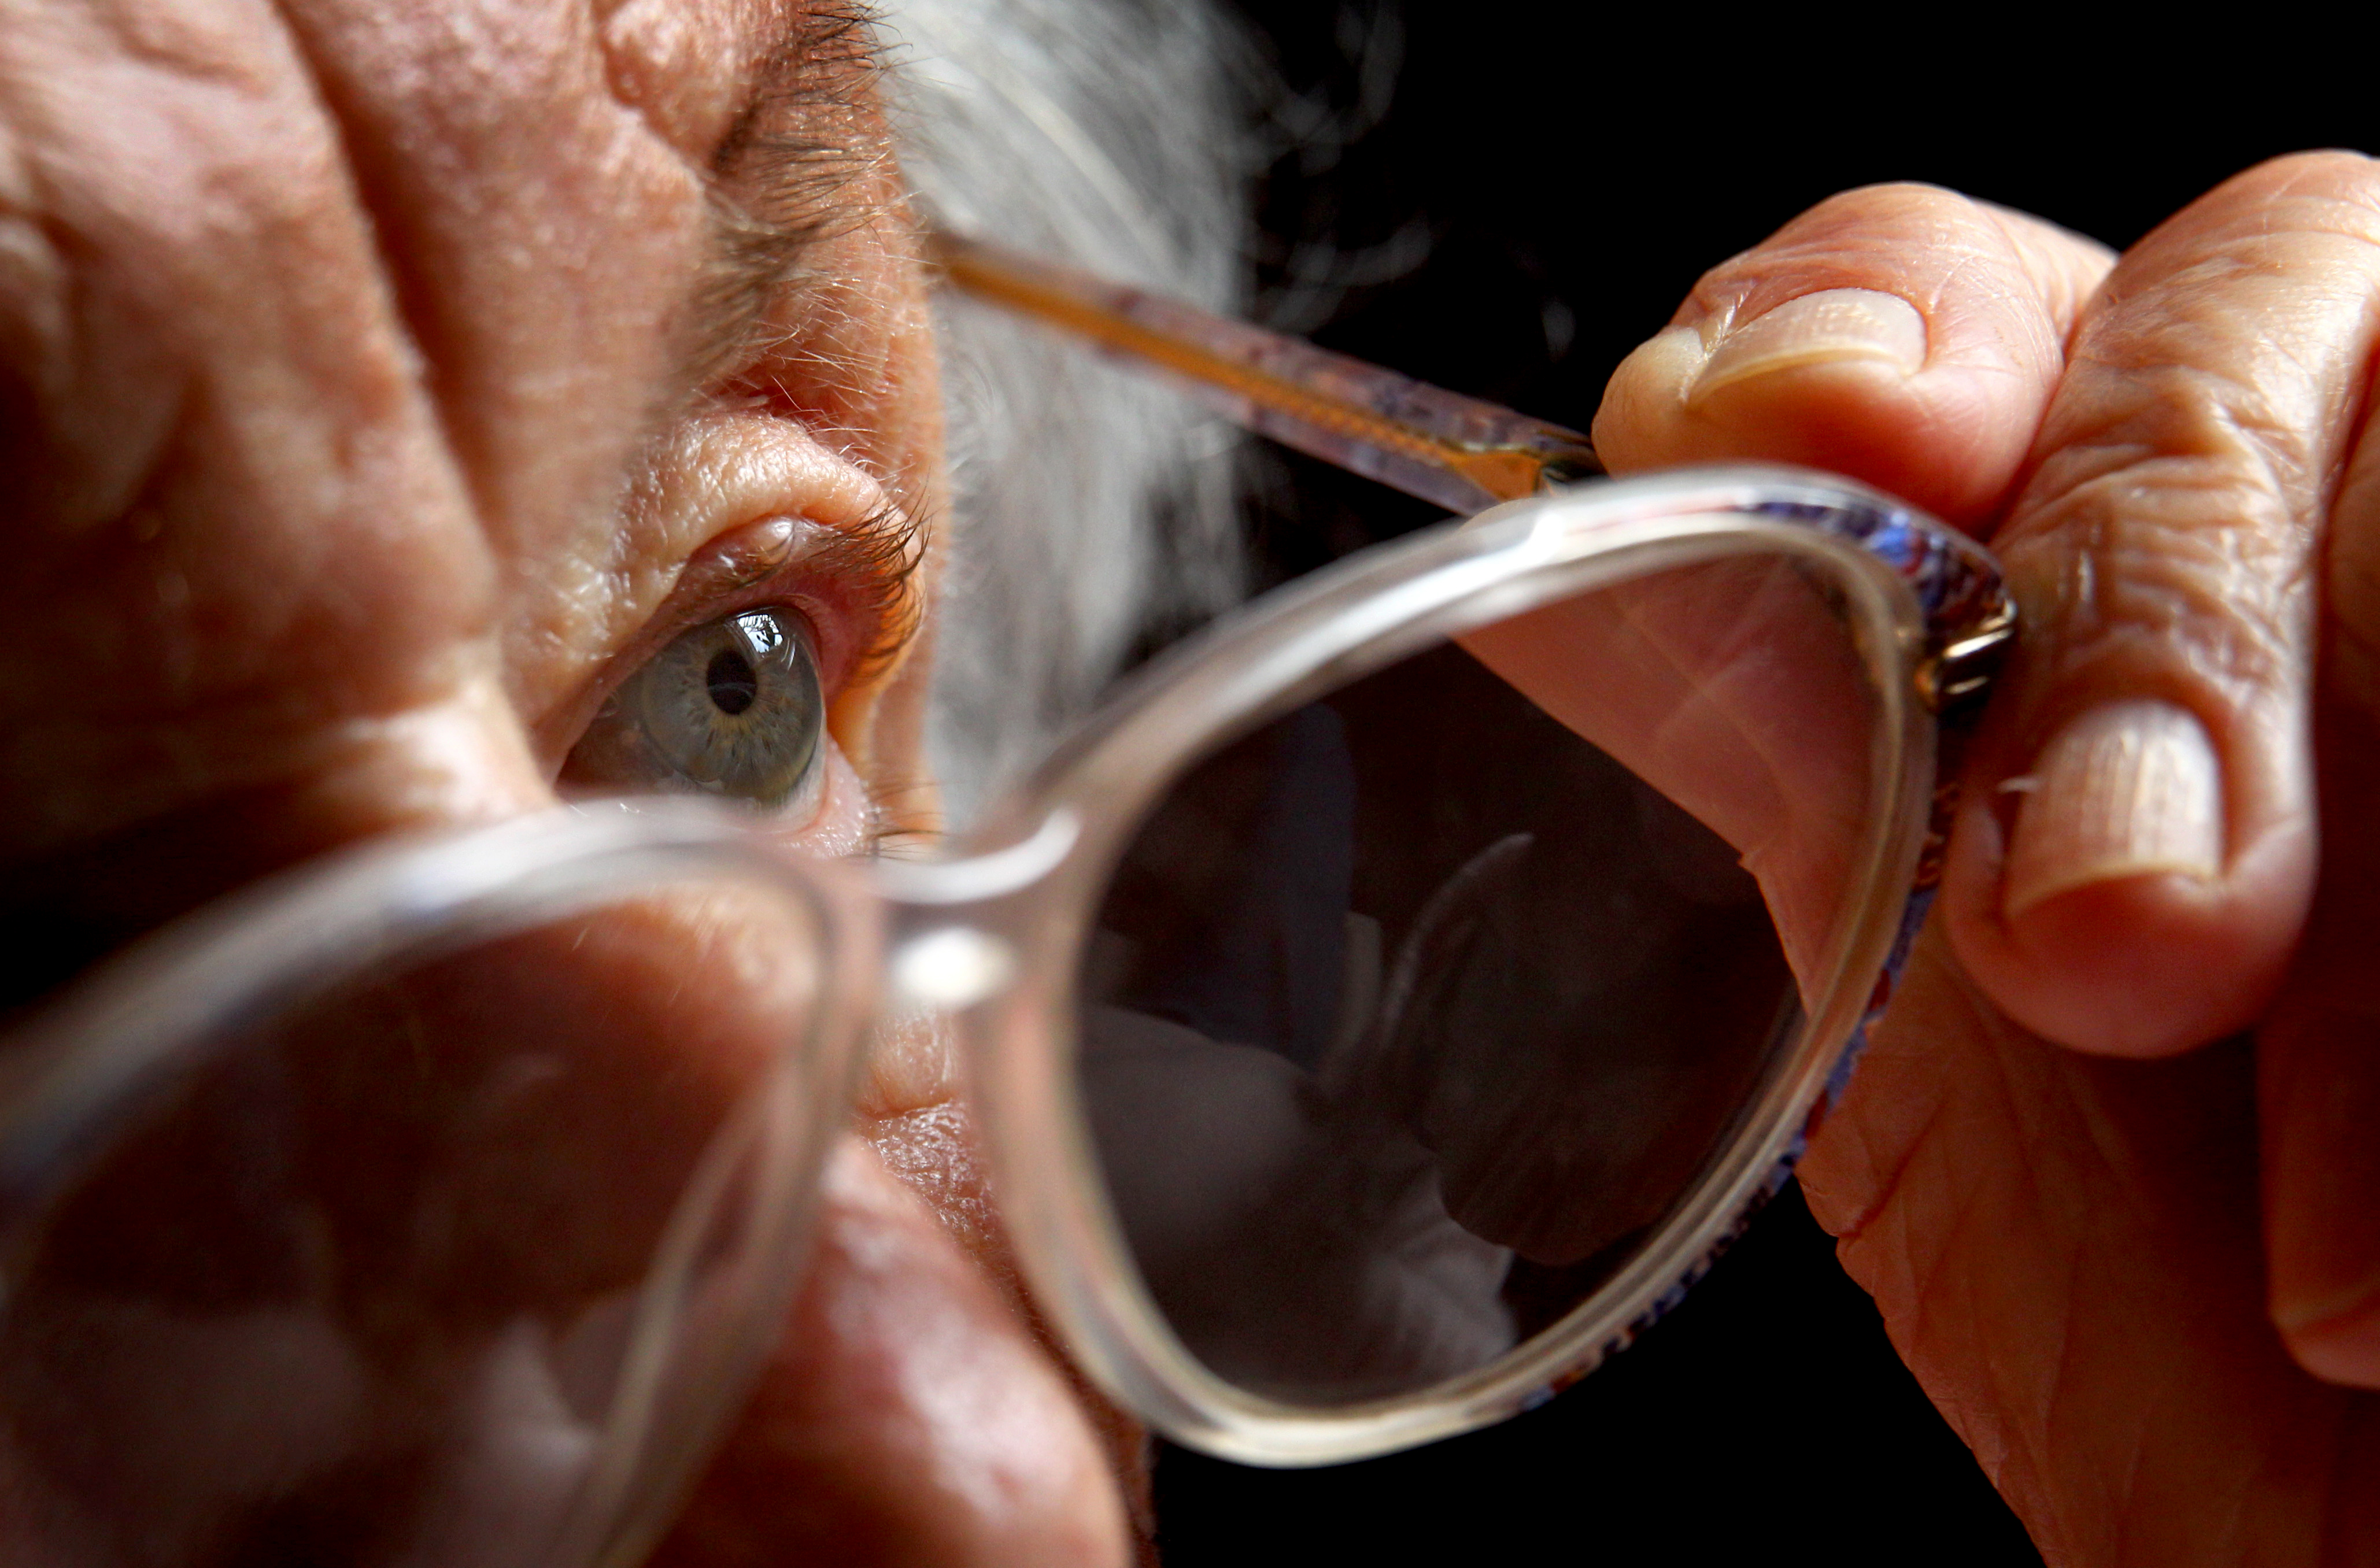 La pérdida repentina y sin dolor de la vista se puede deber a un trastorno circulatorio, más frecuente en personas mayores. Foto: Karl-Josef Hildenbrand/dpa